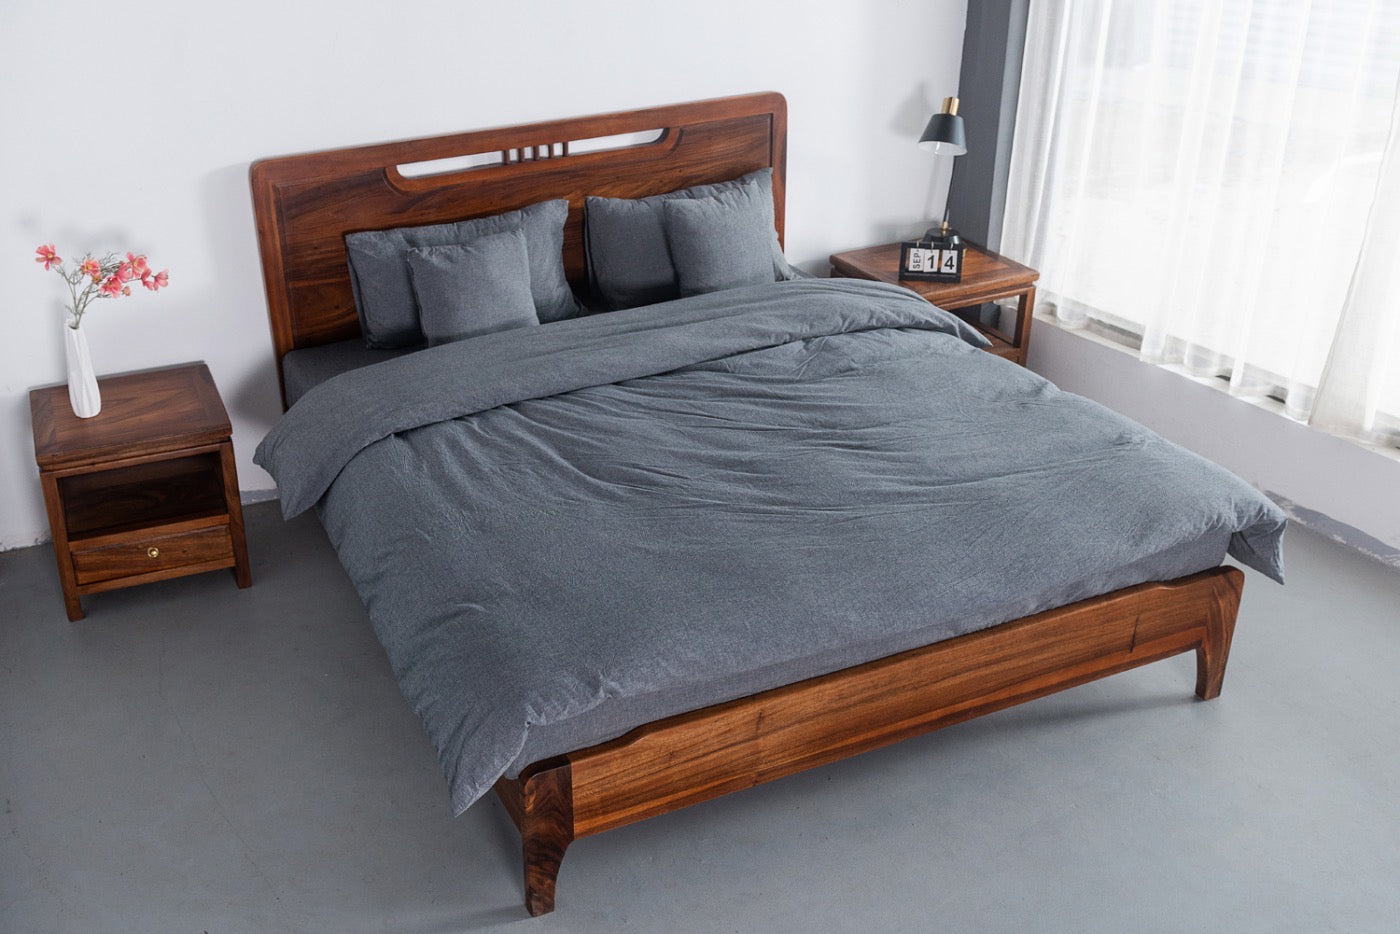 هيكل سرير من خشب الجوز SA الصلب، وإطار سرير من خشب الجوز